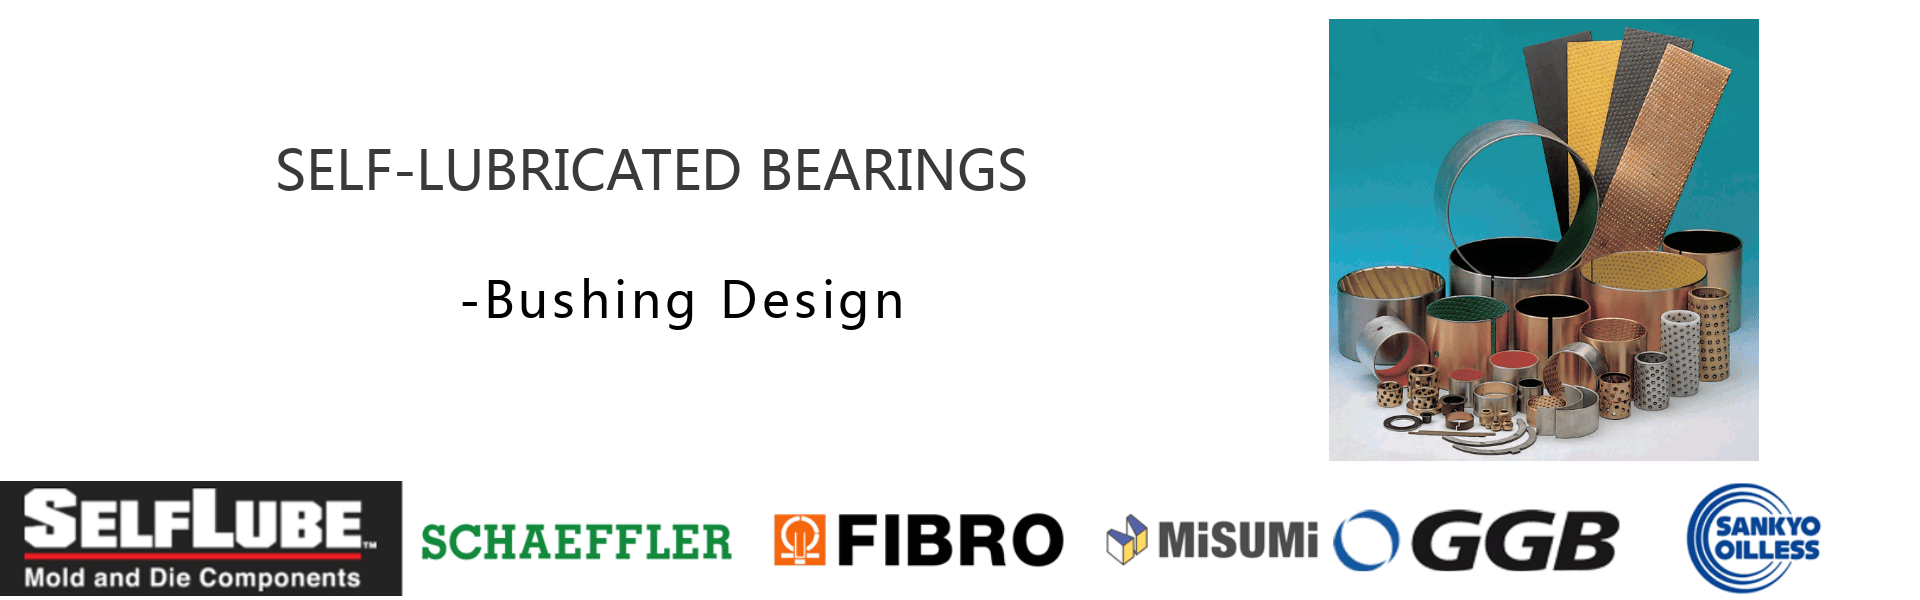 self-lubricated bearing-bushing design